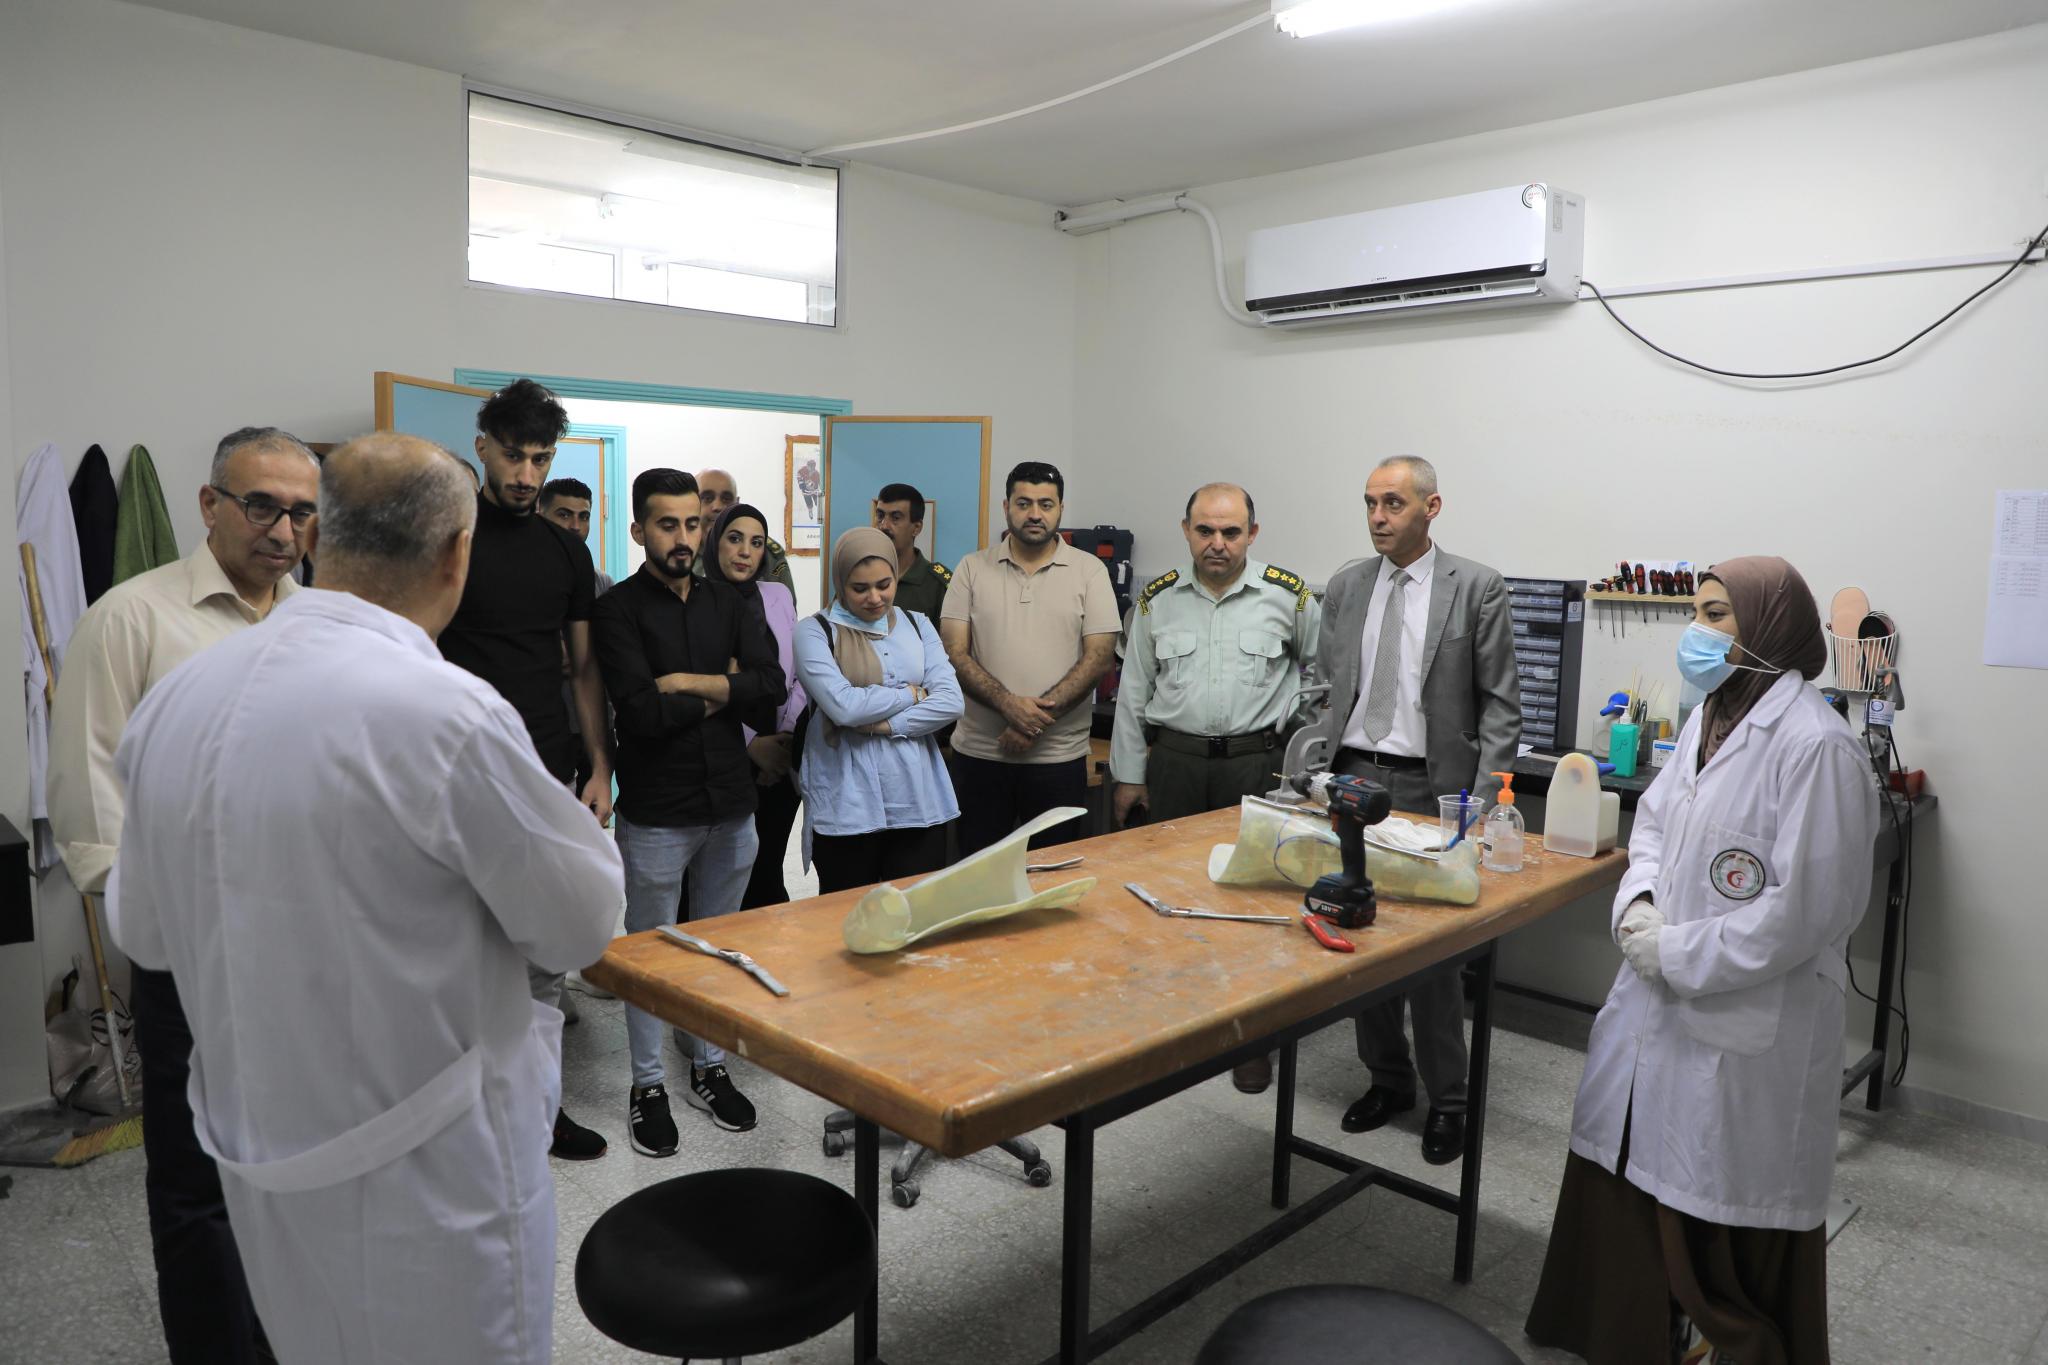 كلية العلوم الطبية المساندة في العربية الامريكية تزور مؤسسات طبية في بيت لحم لبحث تدريب طلبة الأطراف الصناعية